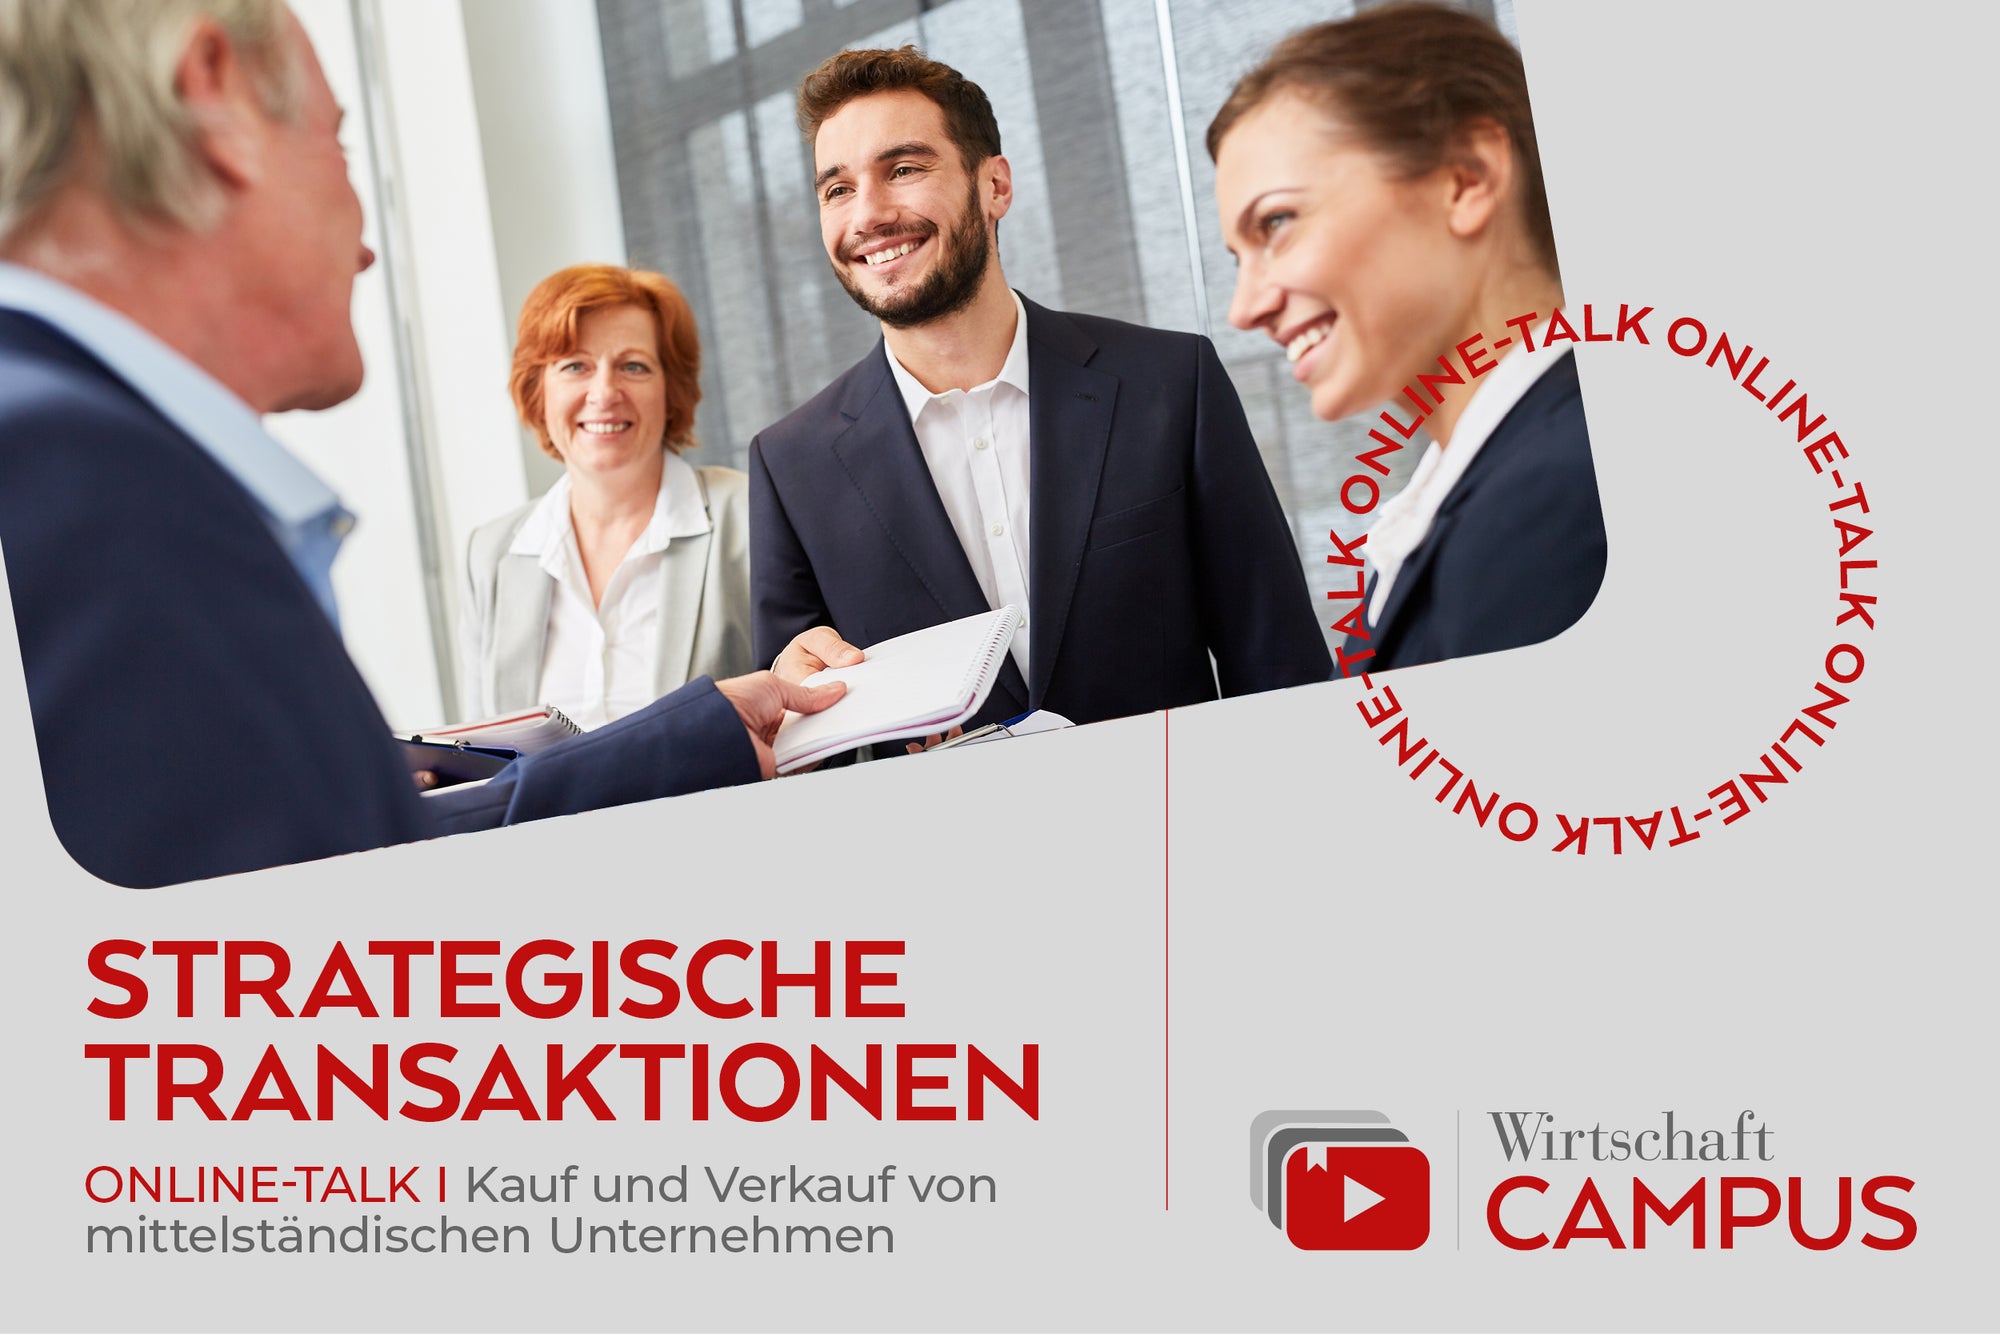 Das Thumbnail zum Thema Strategische Transaktionen. Rote Schrift auf grauem Hintergrund mit dem WIRTSCHAFT Campus Logo unten rechts. Oben Links ein Bild von vier Personen bei der Übergabe von Verträgen.